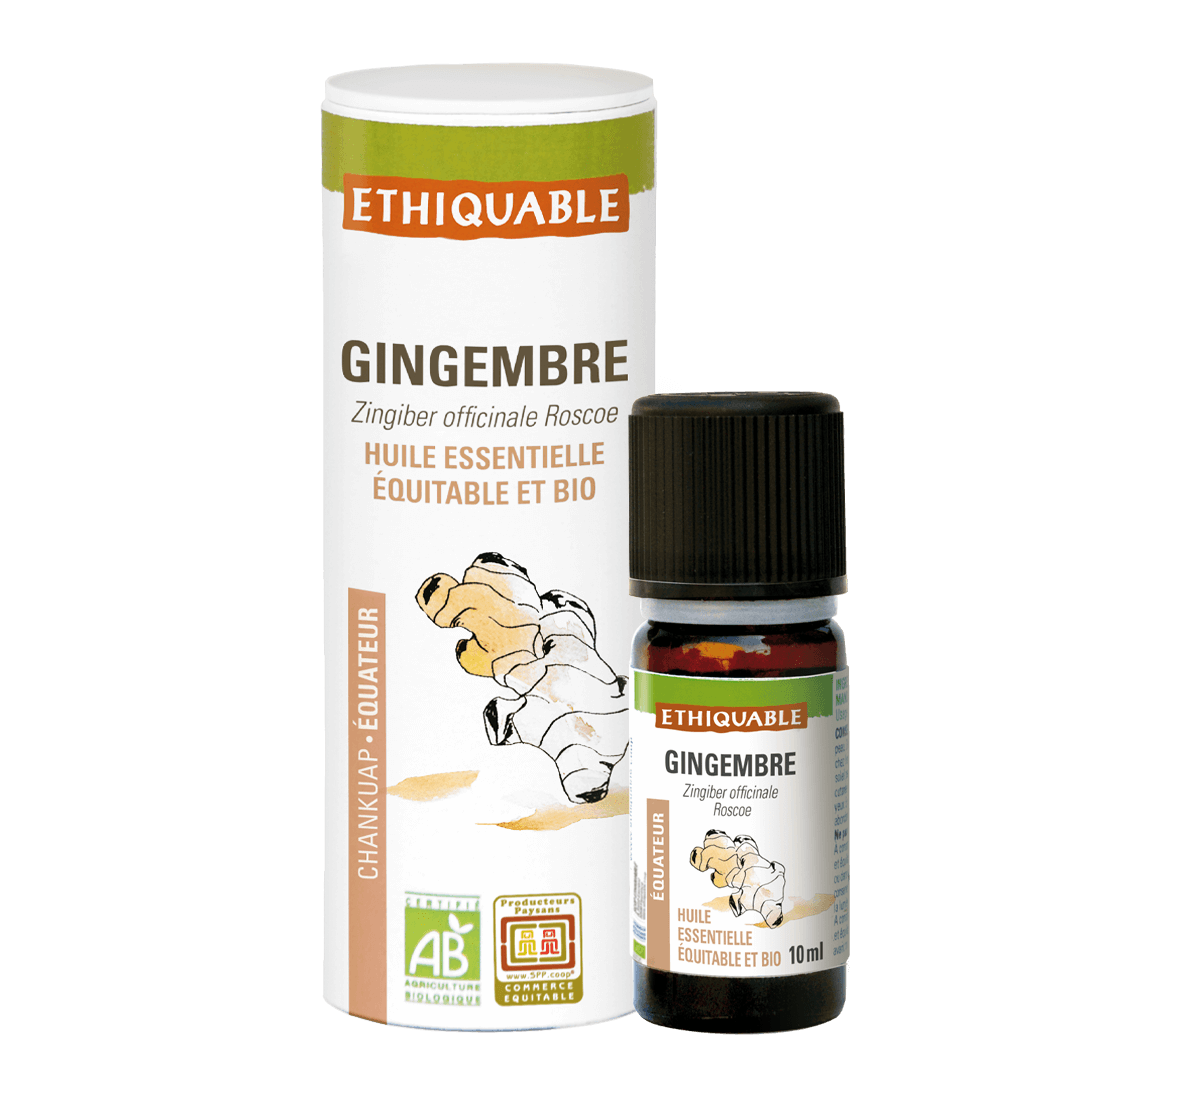 Ethiquable - Pure huile essentielle de gingembre d'Equateur équitable et bio